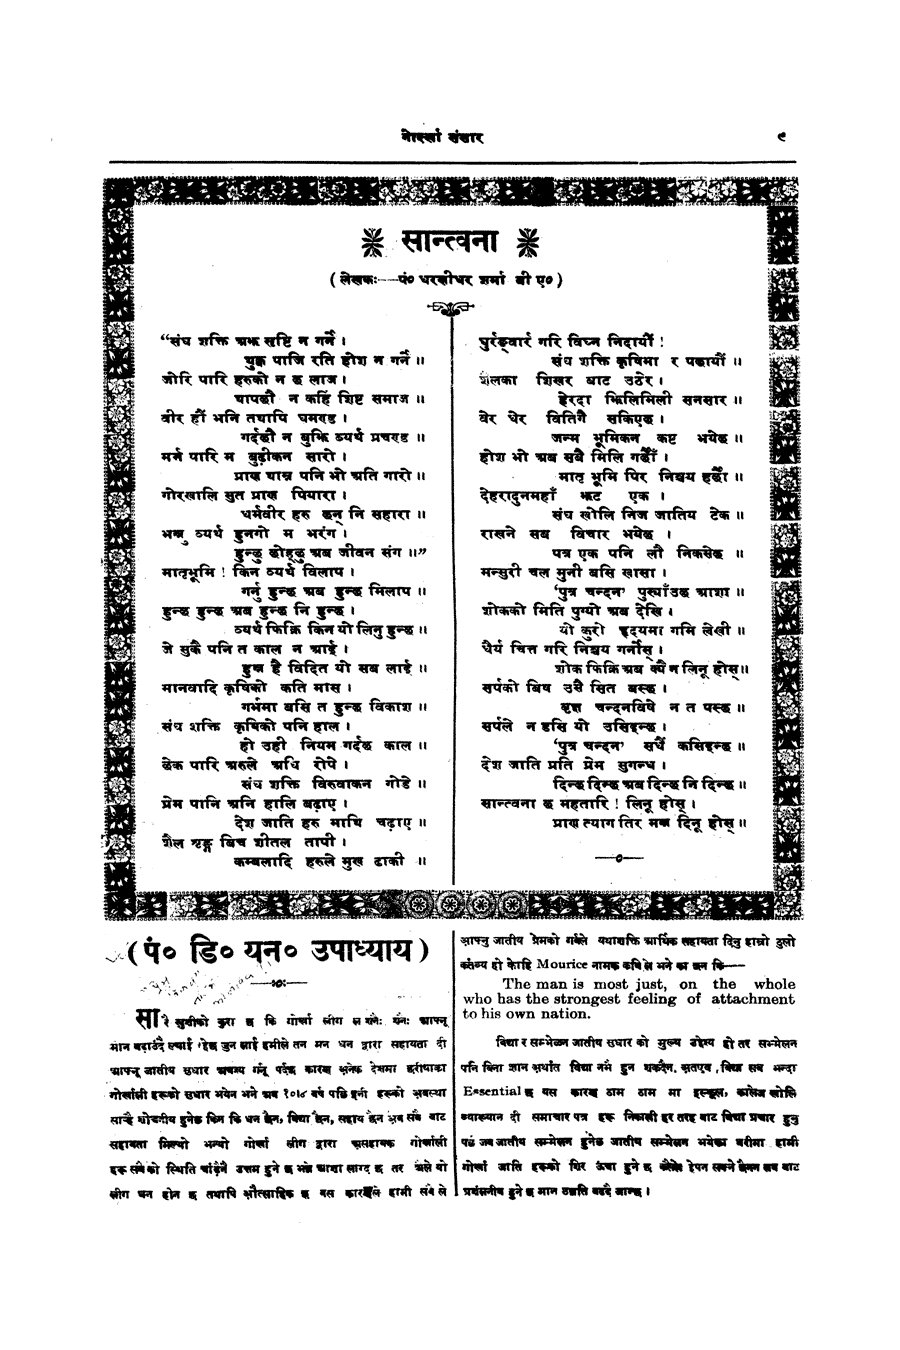 Gorkha Sansar, 23 Nov 1926, page 9